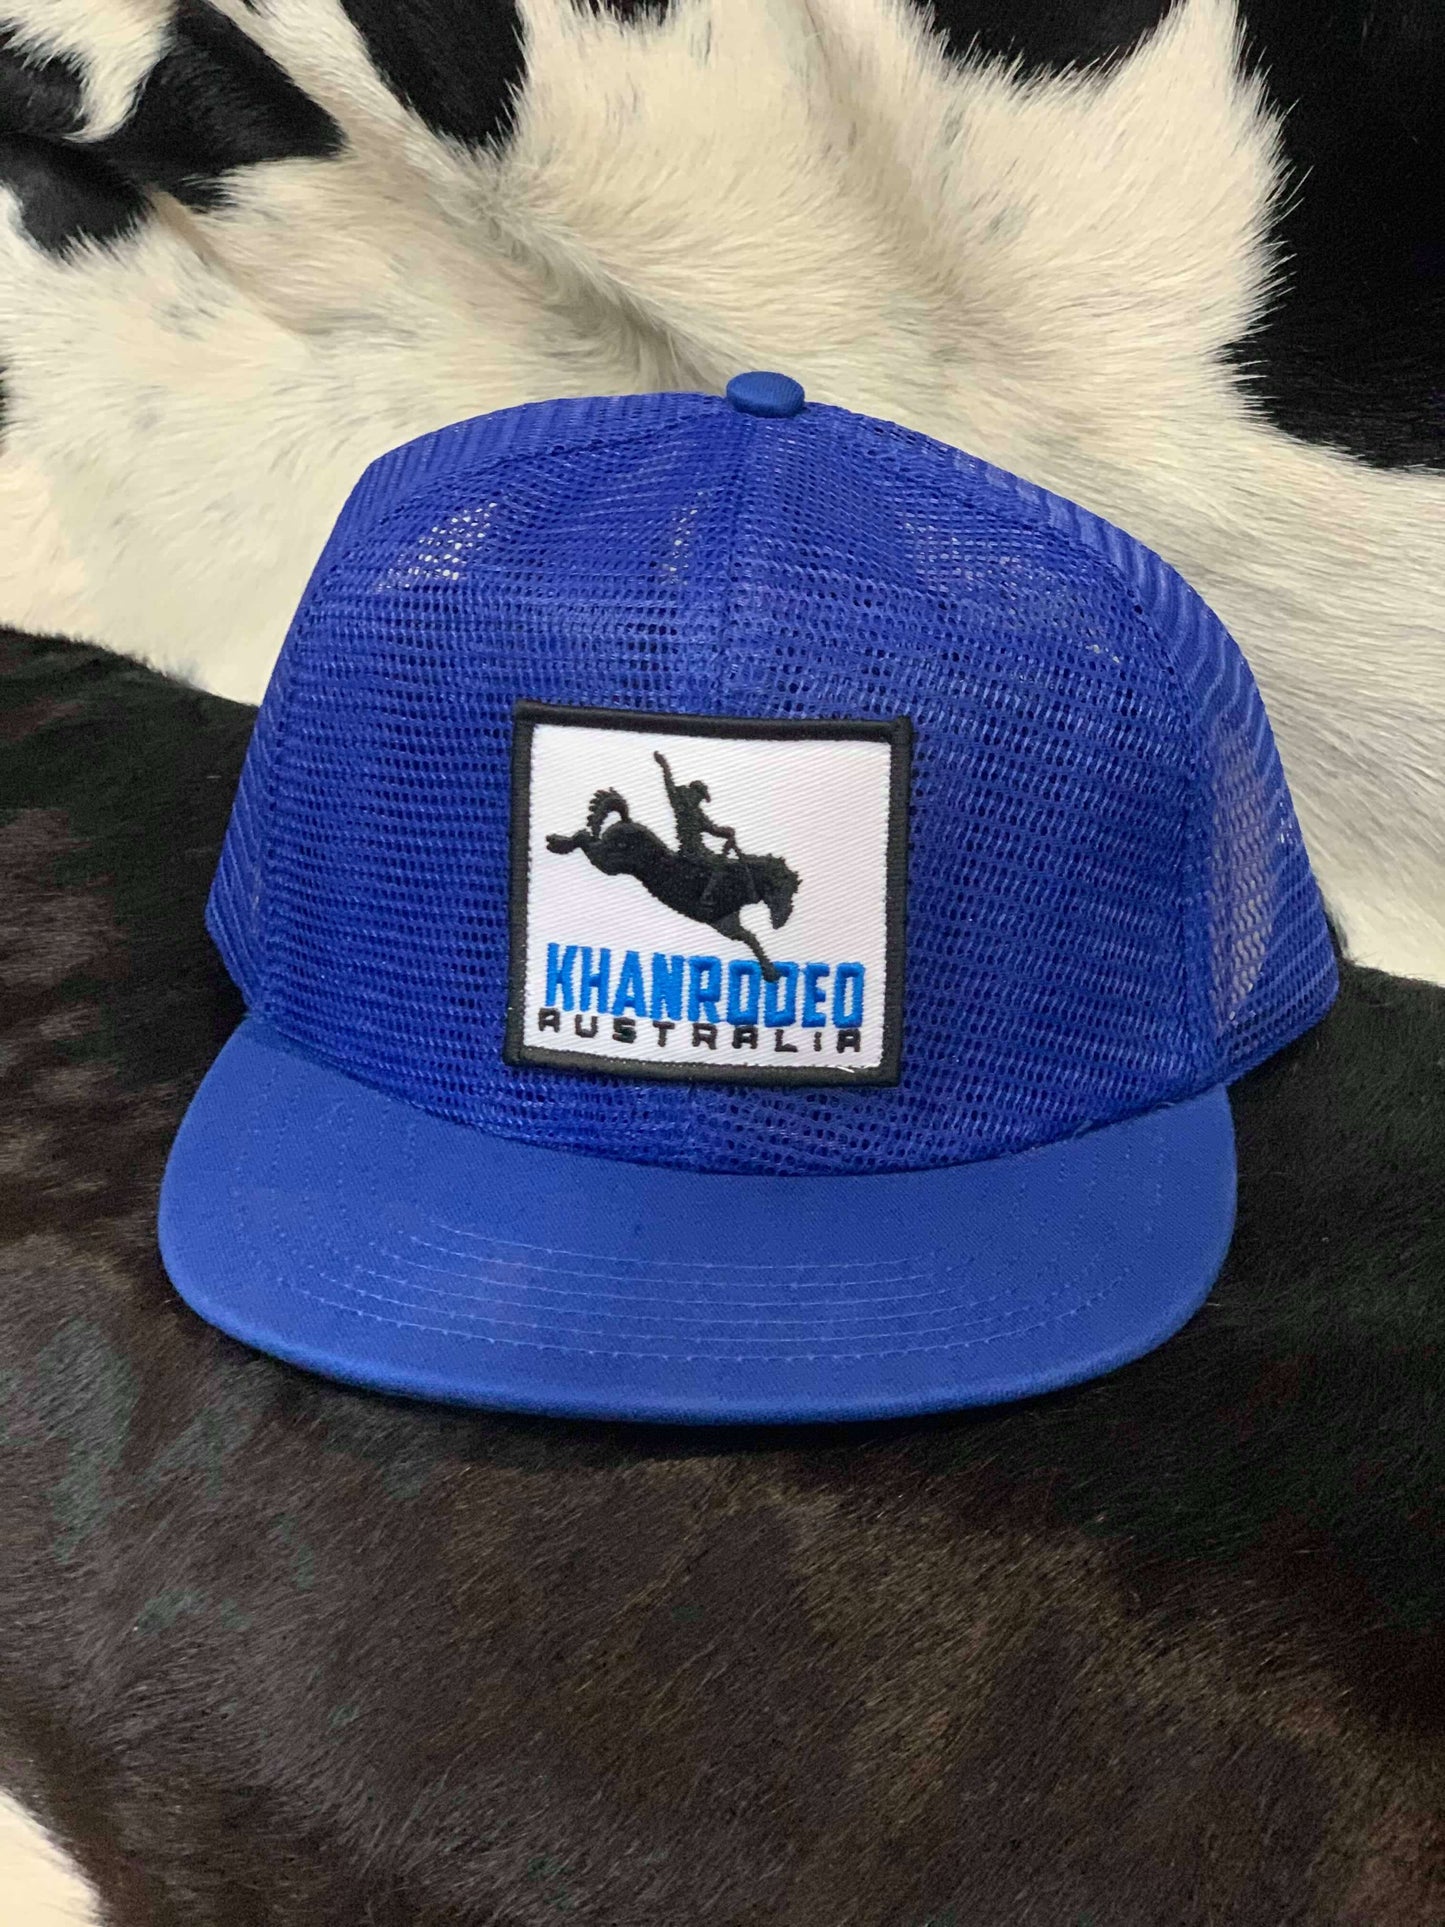 The Campdraft Aus - Royal Blue Khan Rodeo Cap